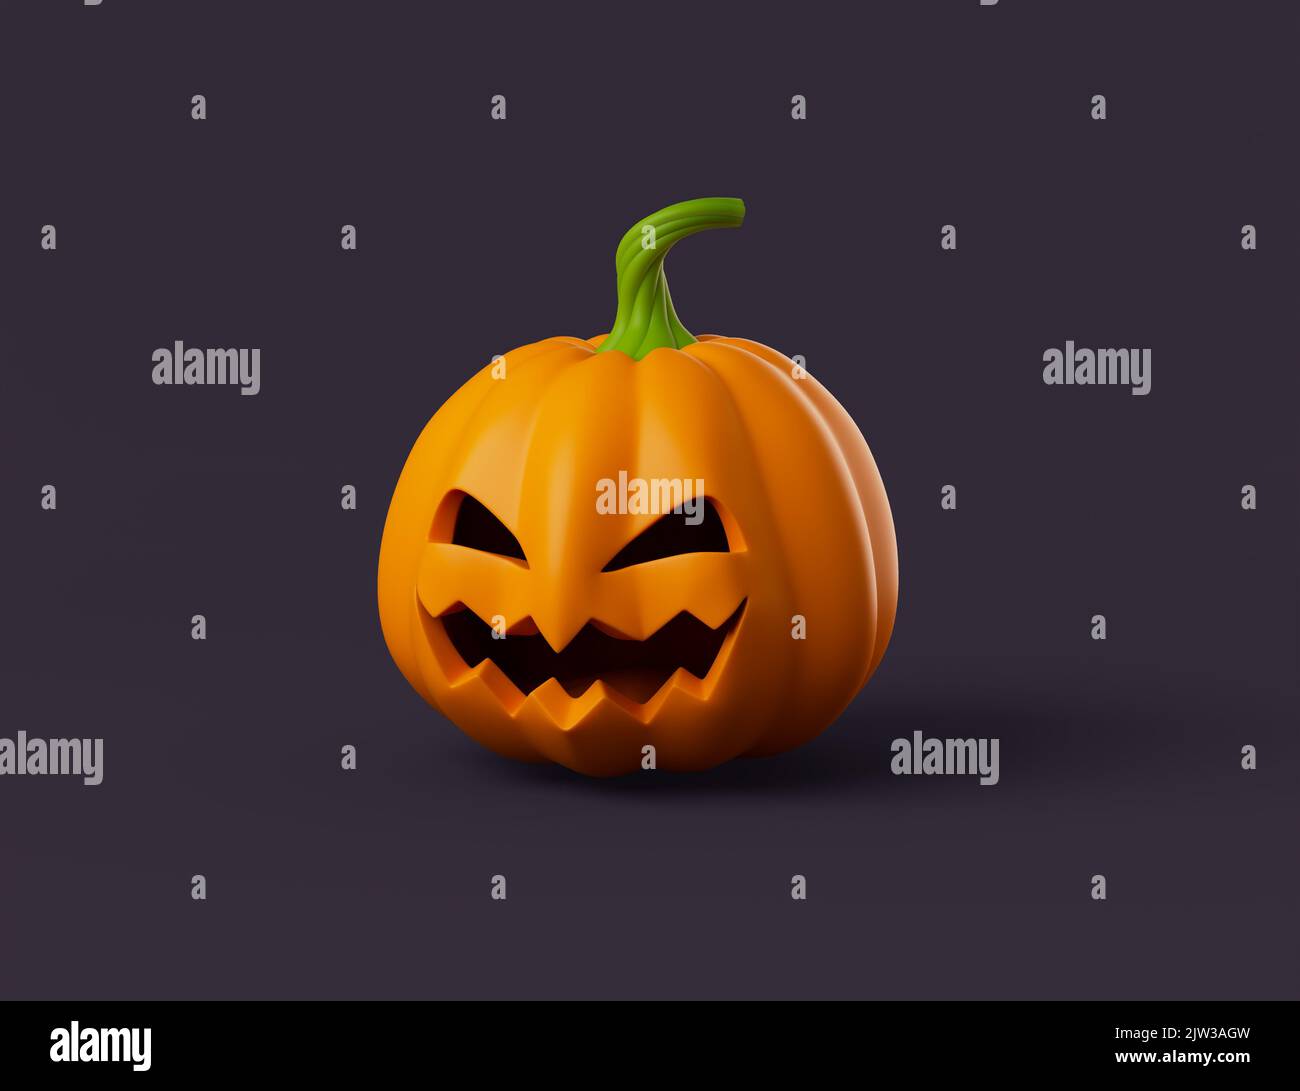 Simple halloween cartoon pumpkin 3d render illustartion. Isolated object on dark background Stock Photo